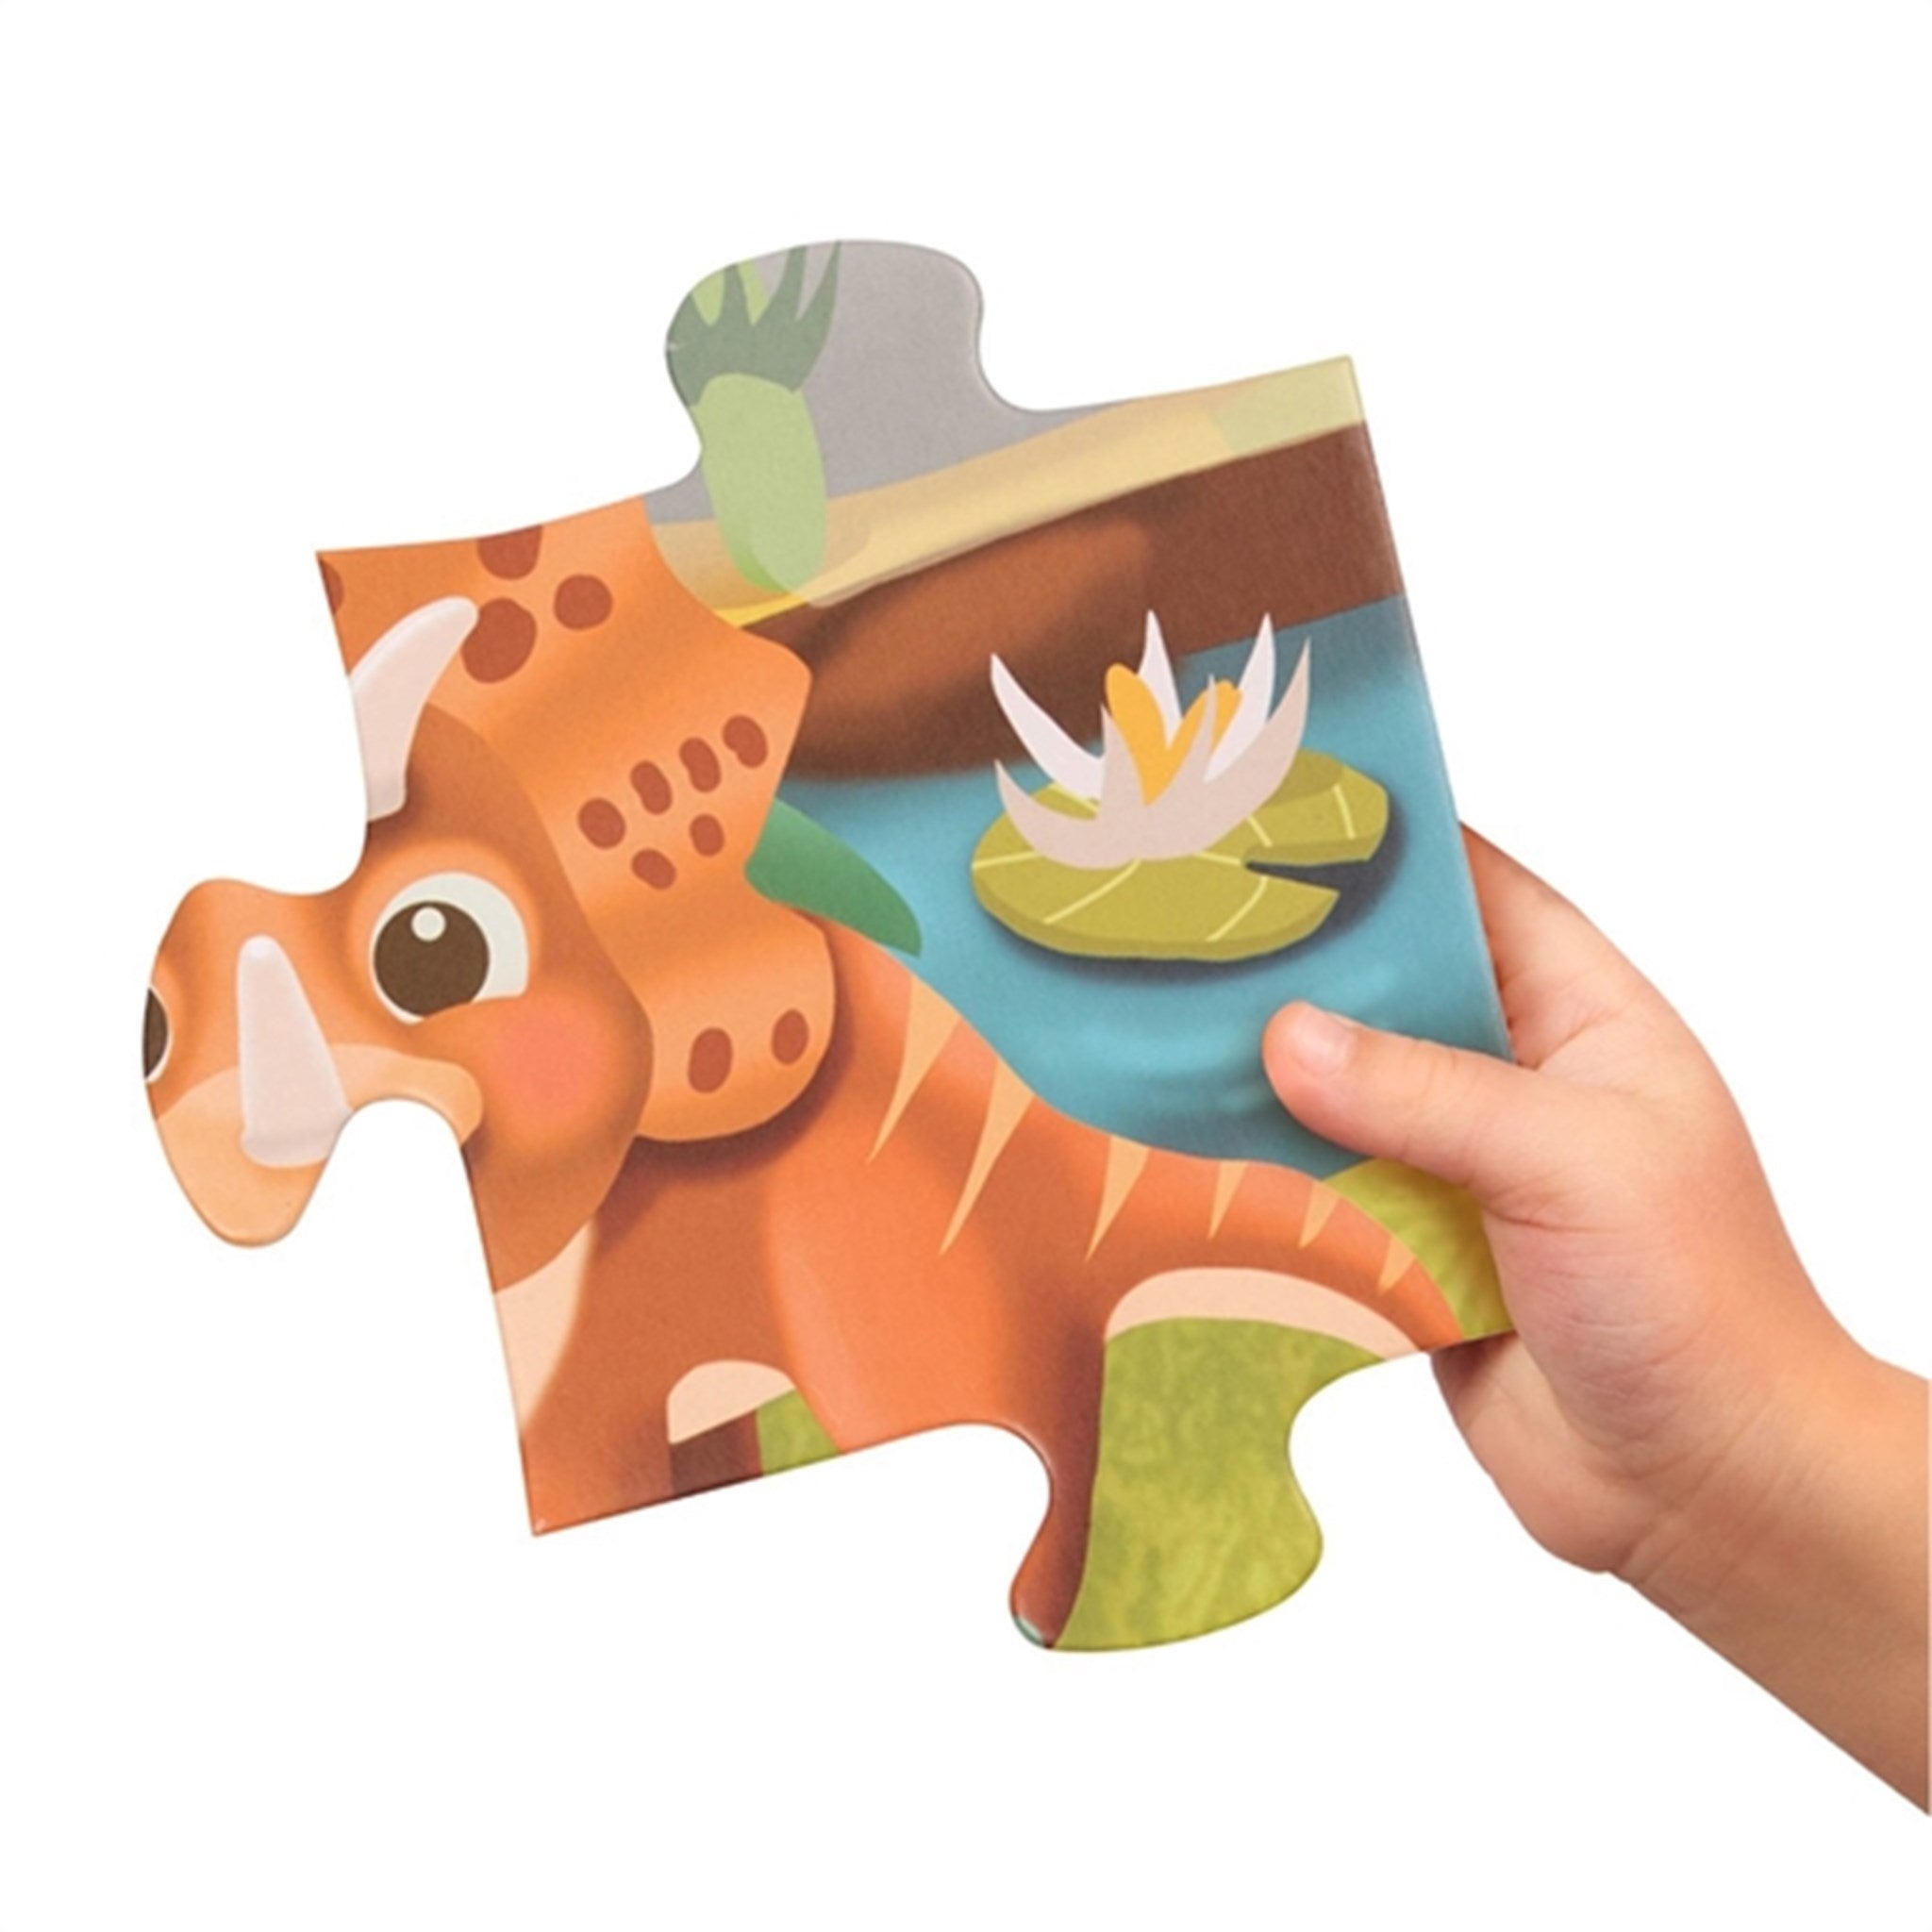 B-toys Giant Jigsaw Floor Puzzle Dino 3